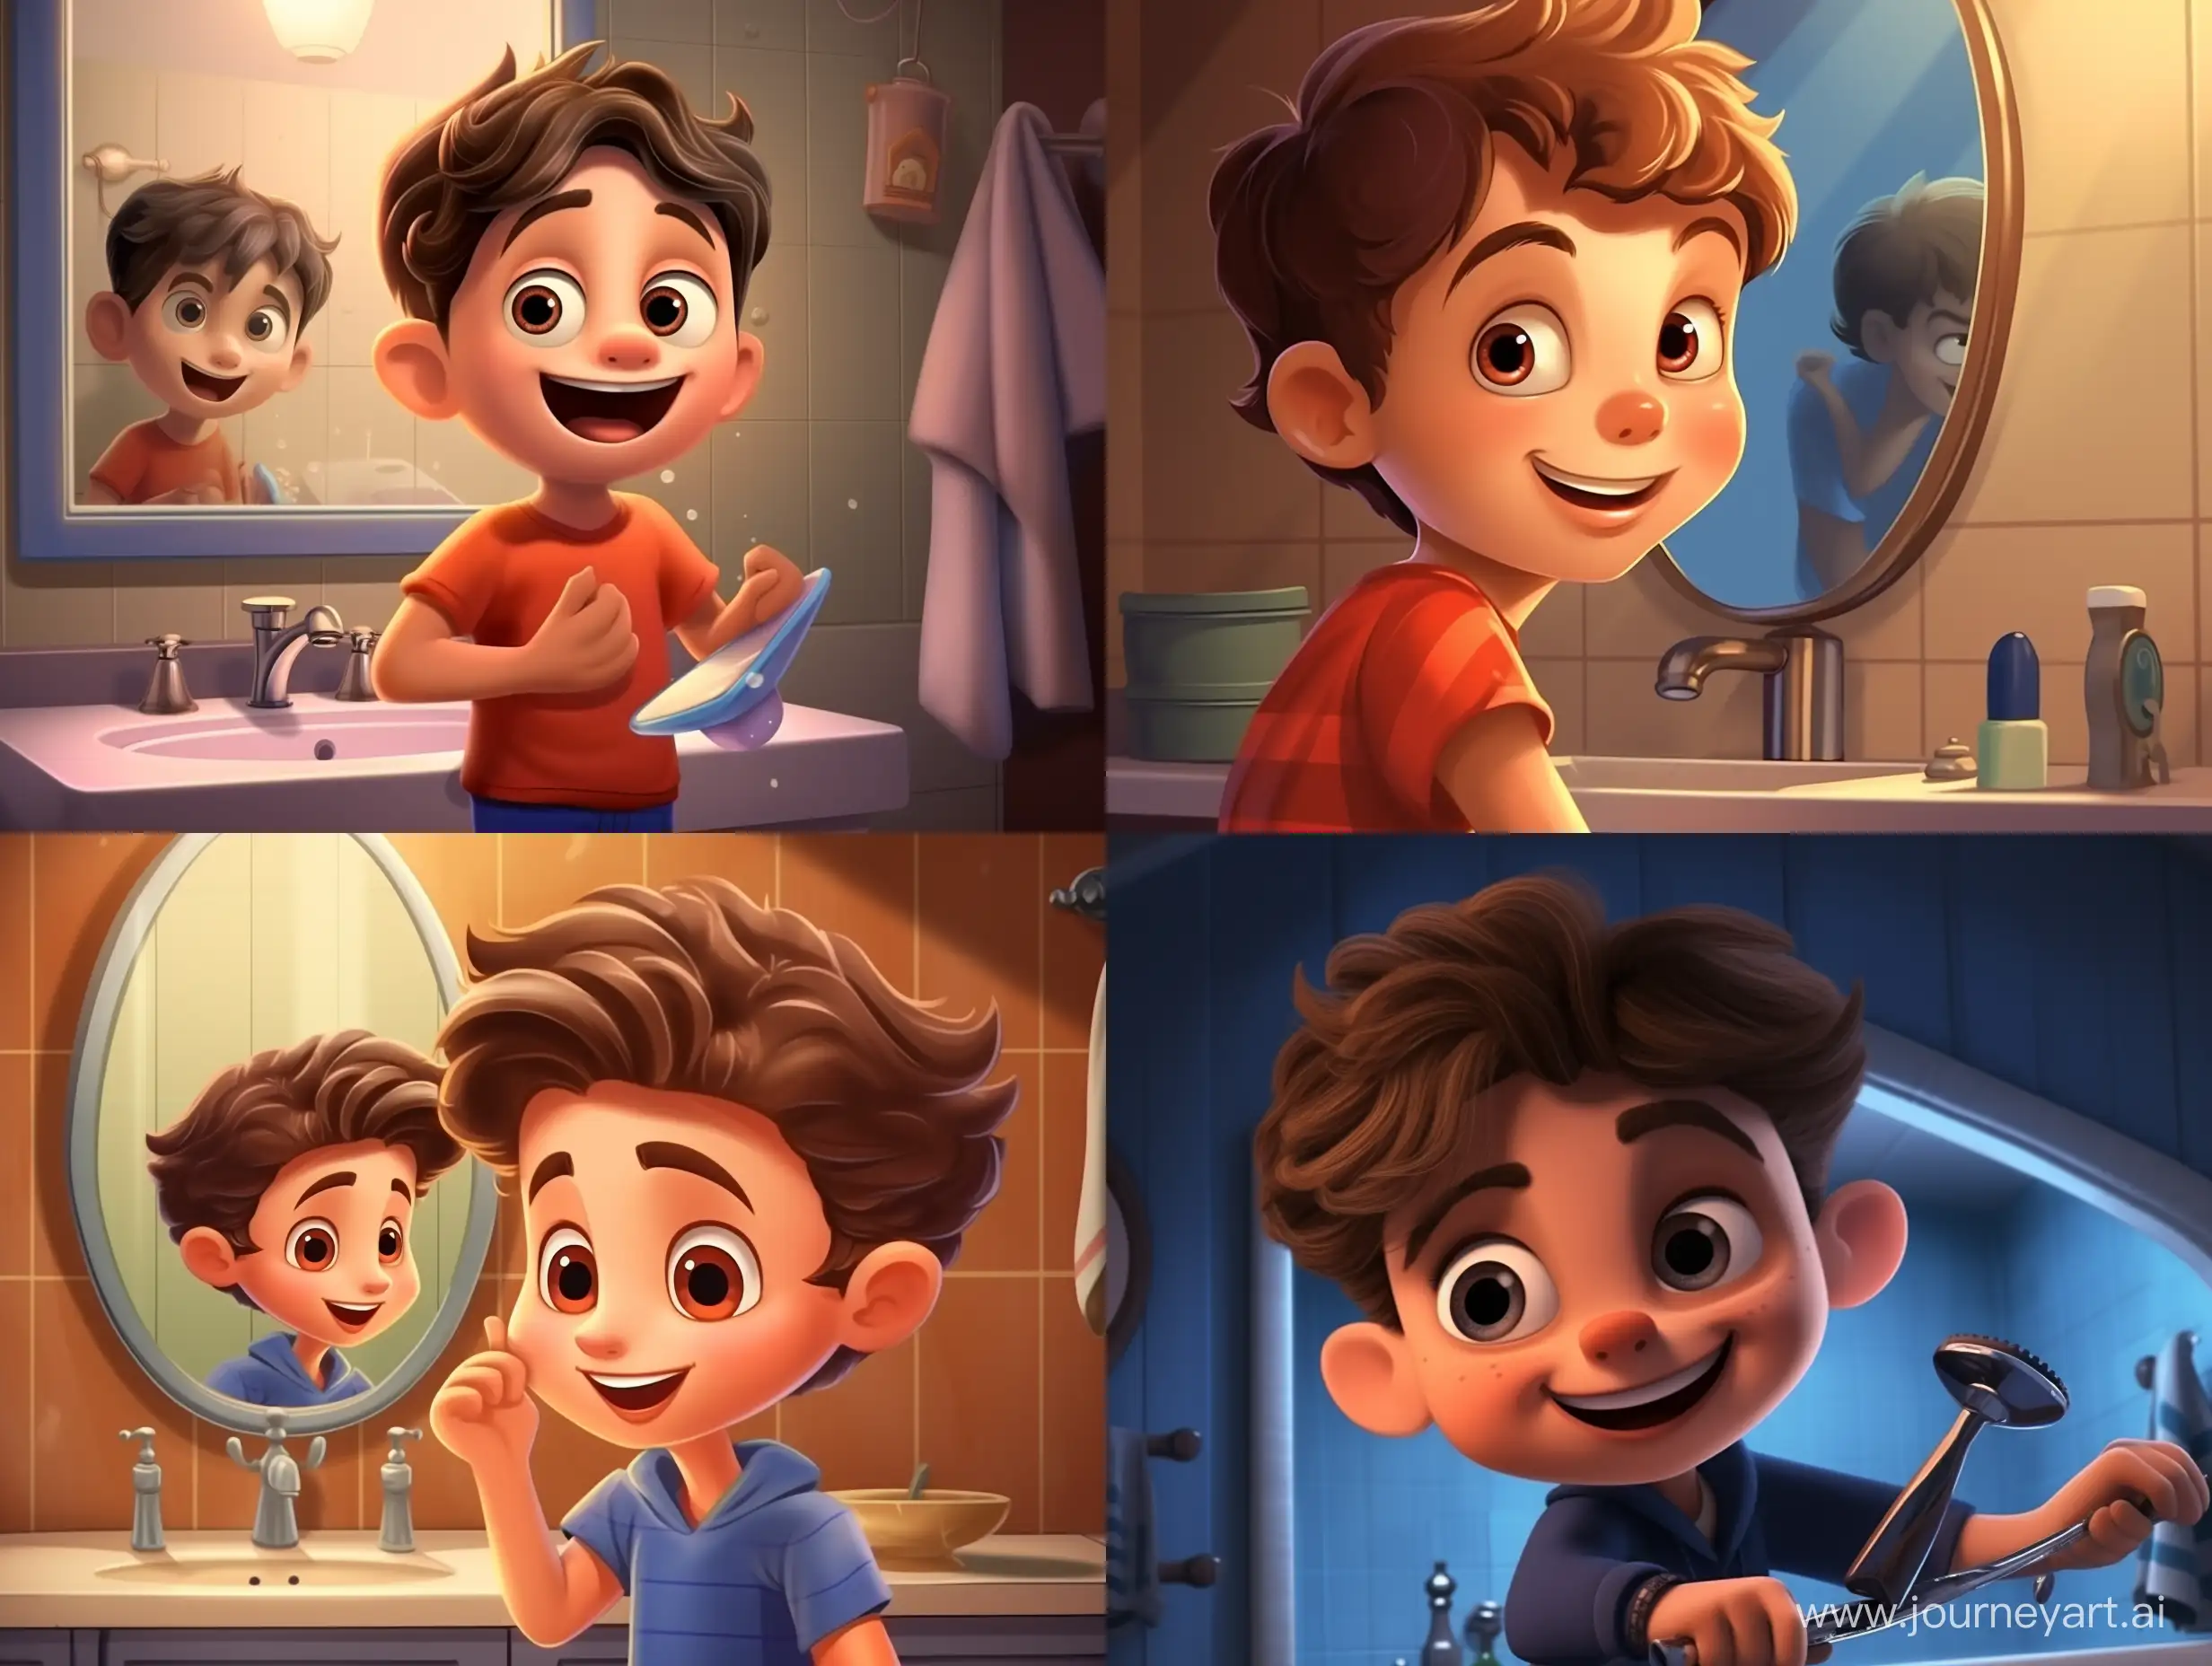 cartoon pixar style of a симпатичный и красивый мальчик в ванной сам стрижет свои волосы машинкой для стрижки волос, смотря в зеркало